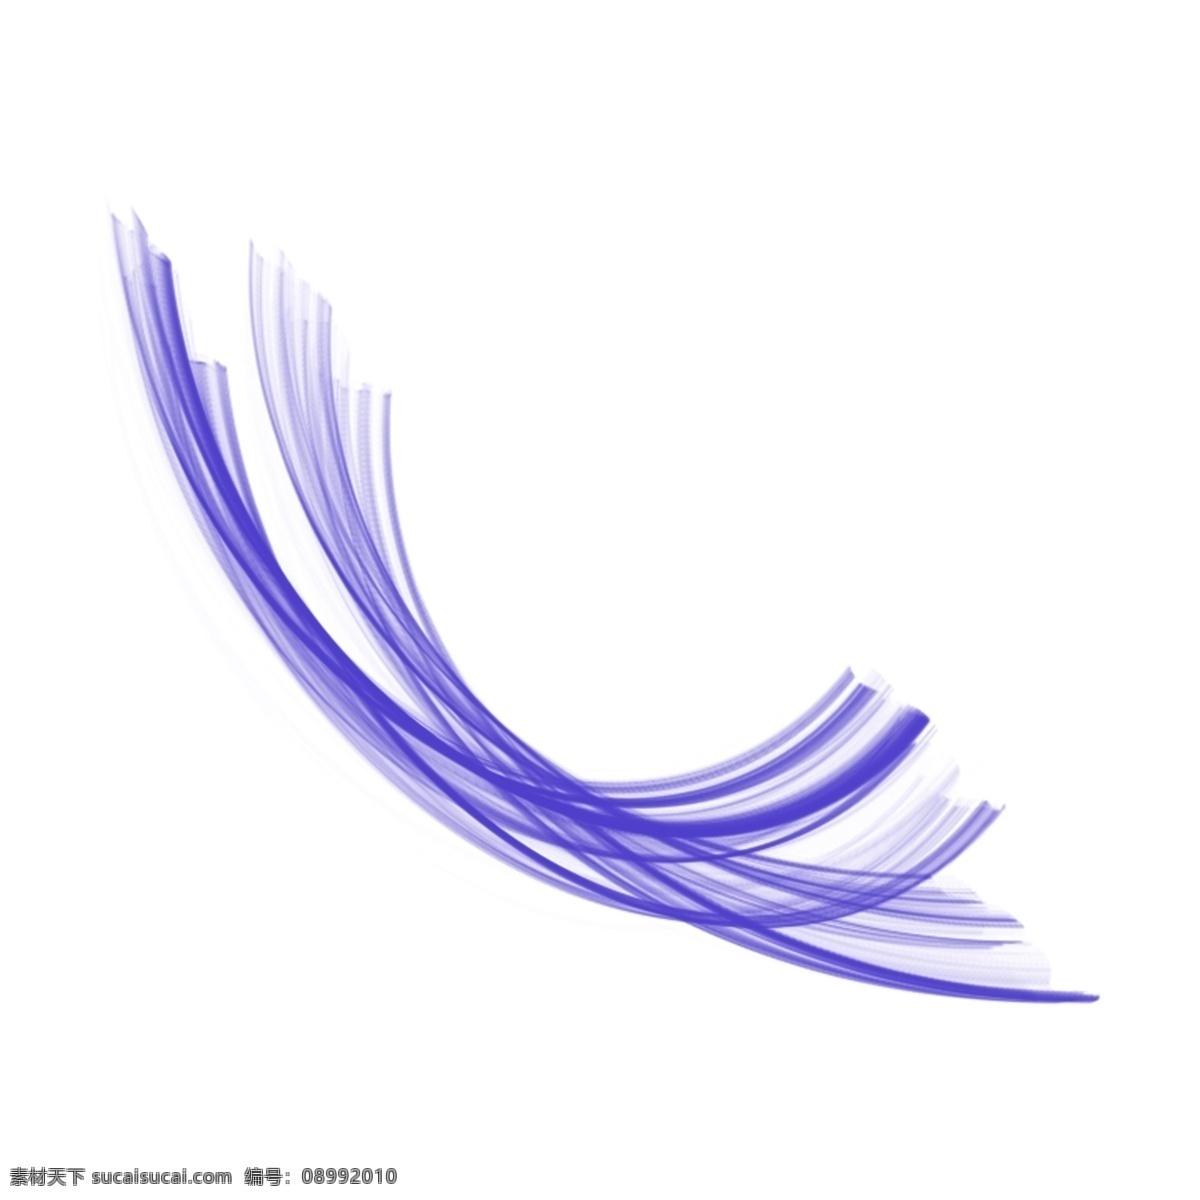 简约 抽象 可爱 紫色 曲线 线条 手绘 平面设计 装饰 背景